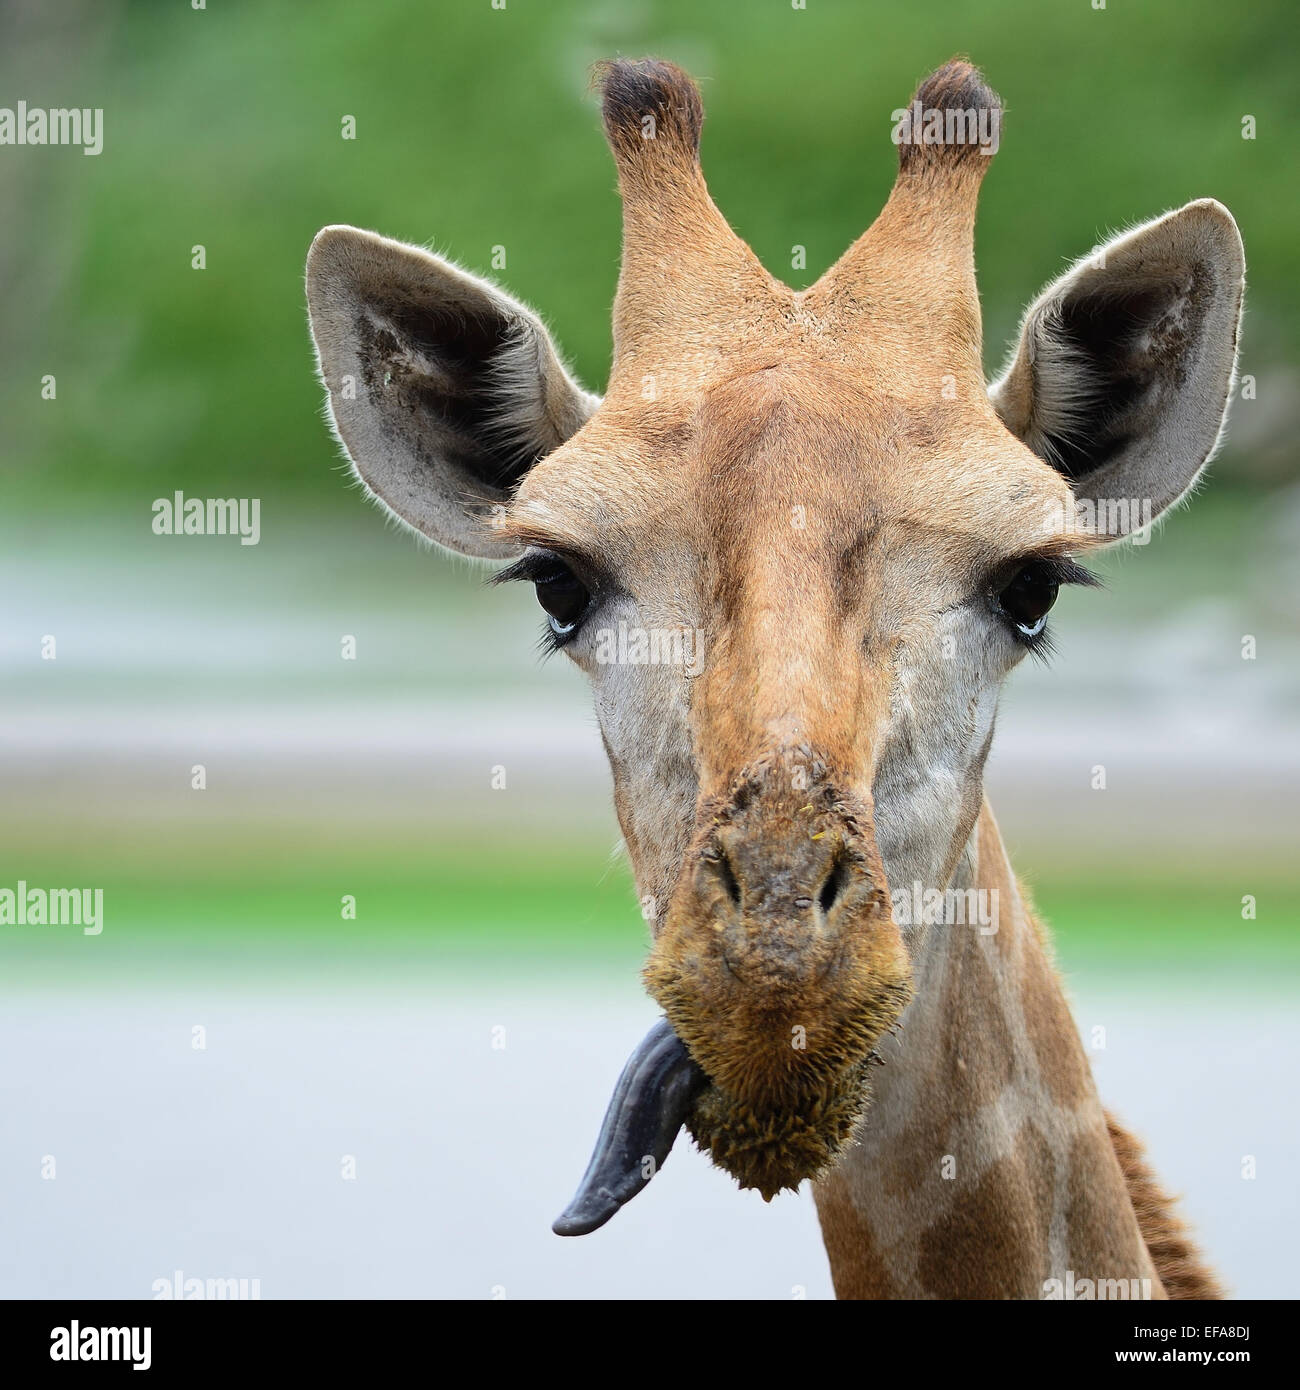 Funny face of Giraffe head Stock Photo